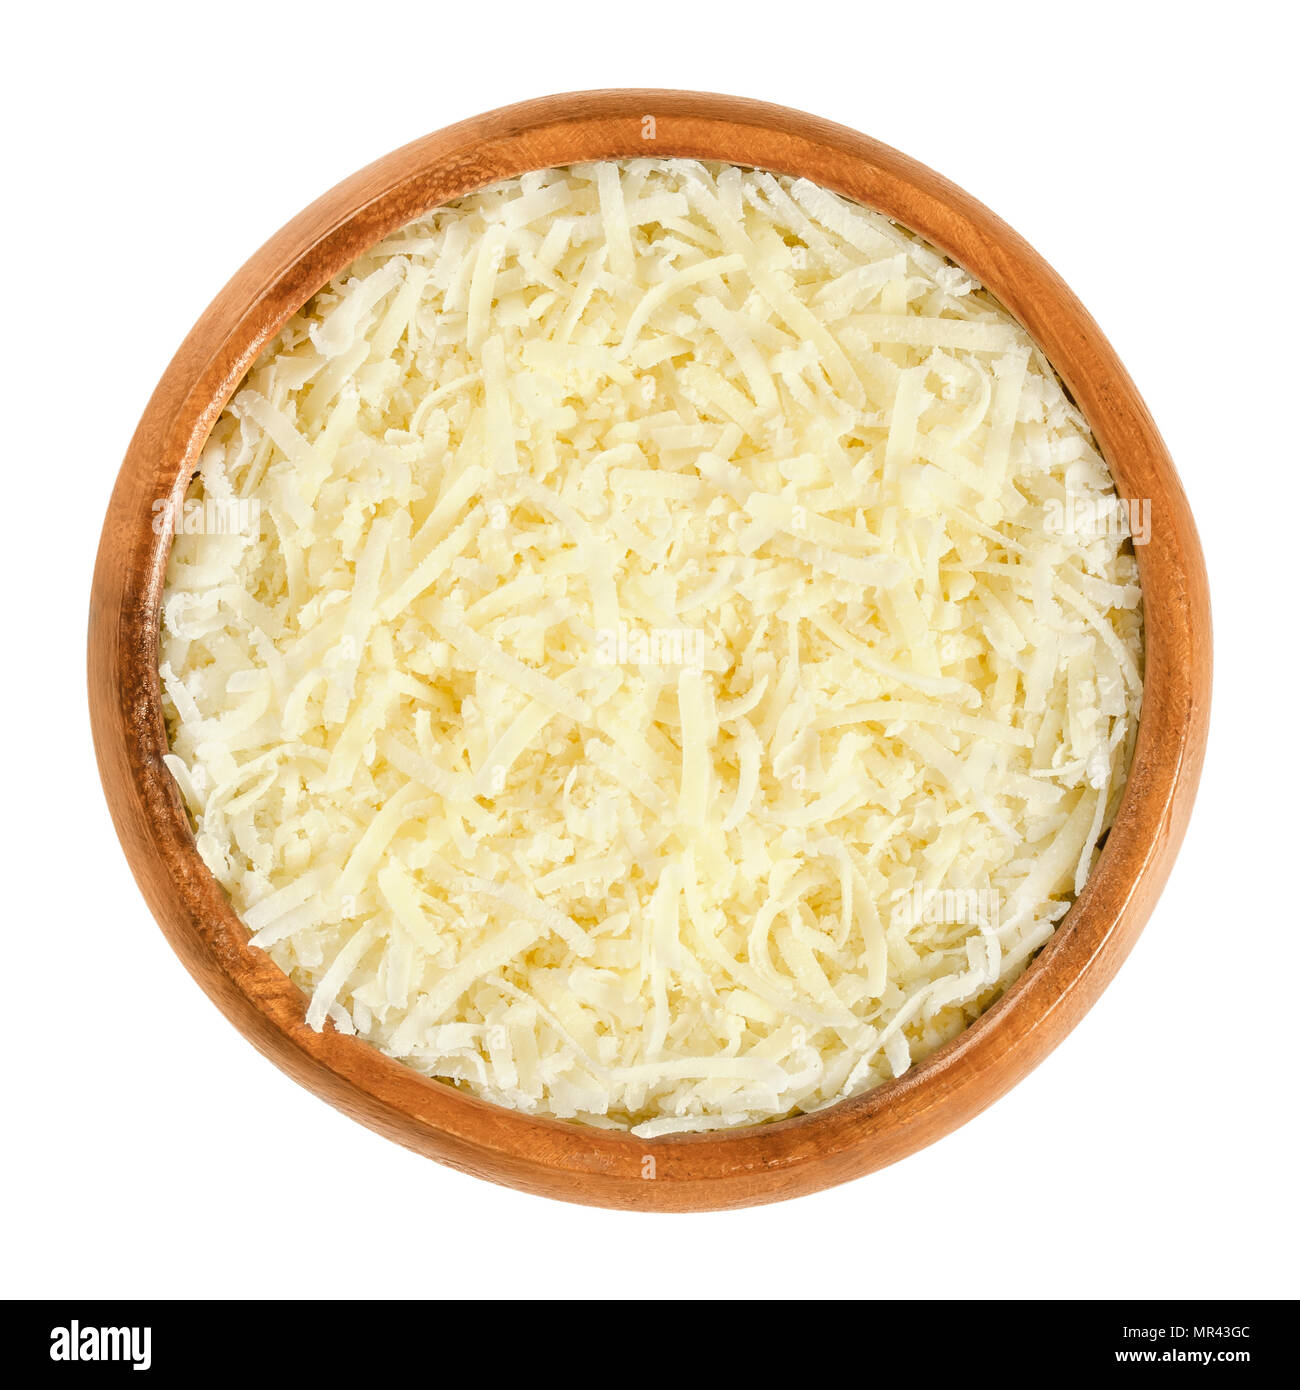 Fromage Parmesan râpé dans un bol en bois. Le Parmigiano-Reggiano. Disque dur, fromage italien granulaire, de couleur légèrement jaune, fait de lait de vache non pasteurisé. Banque D'Images